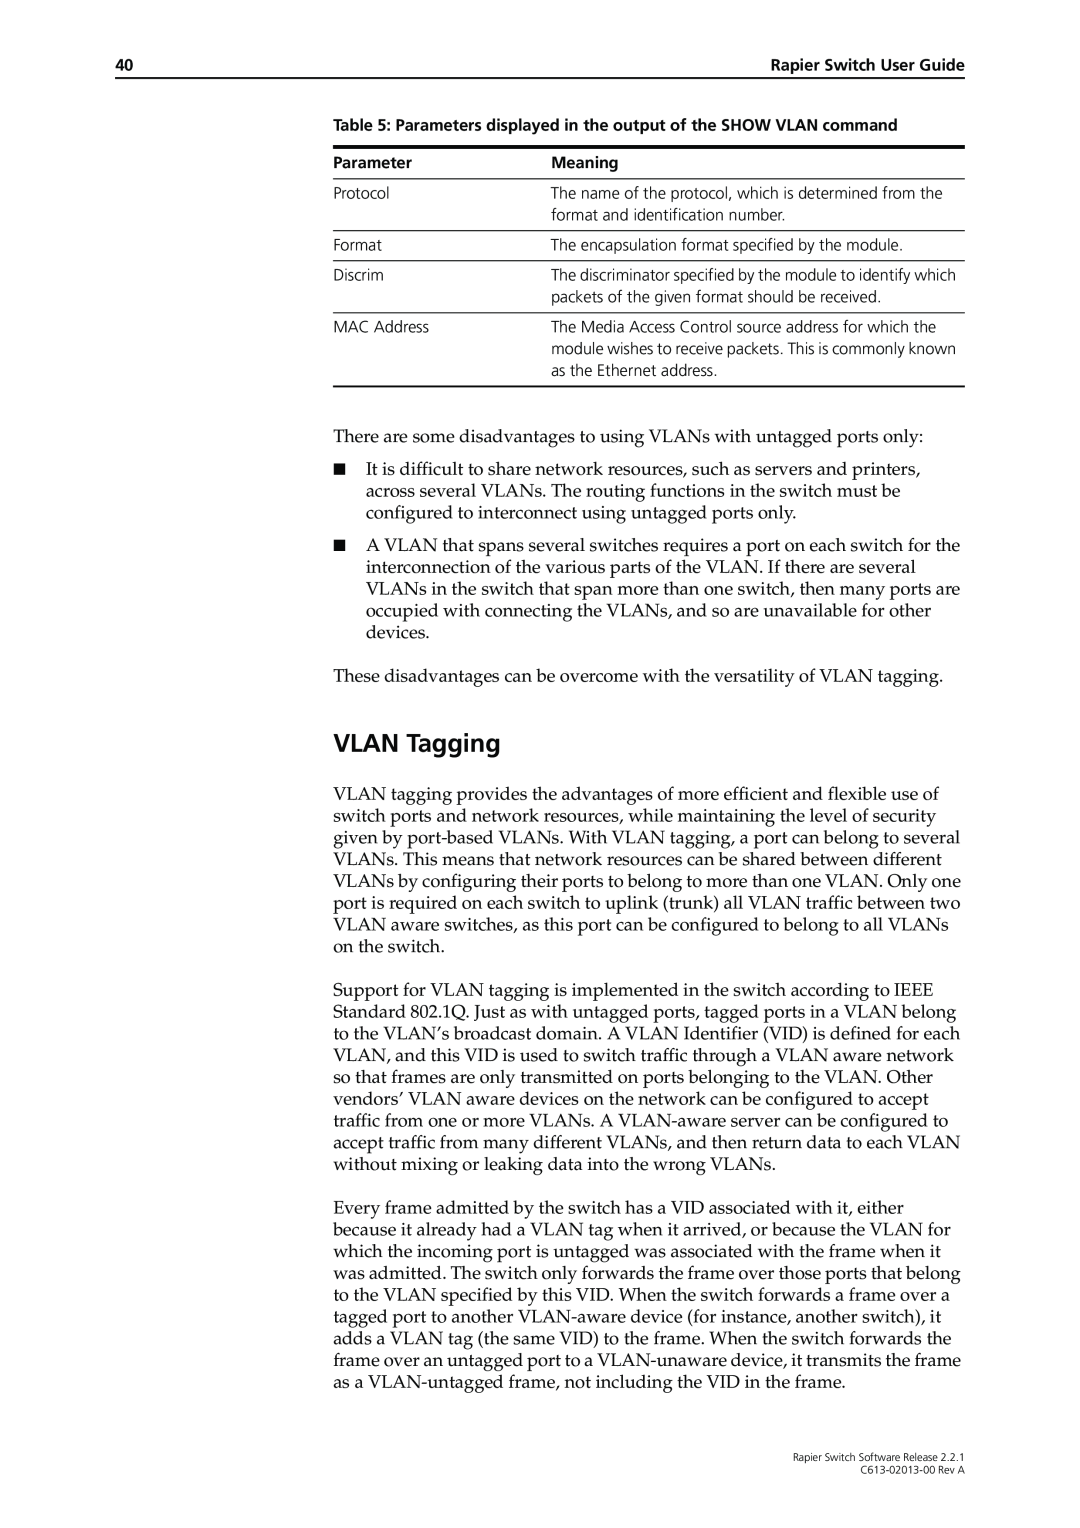 Allied Telesis C613-02013-00 manual VLAN Tagging 